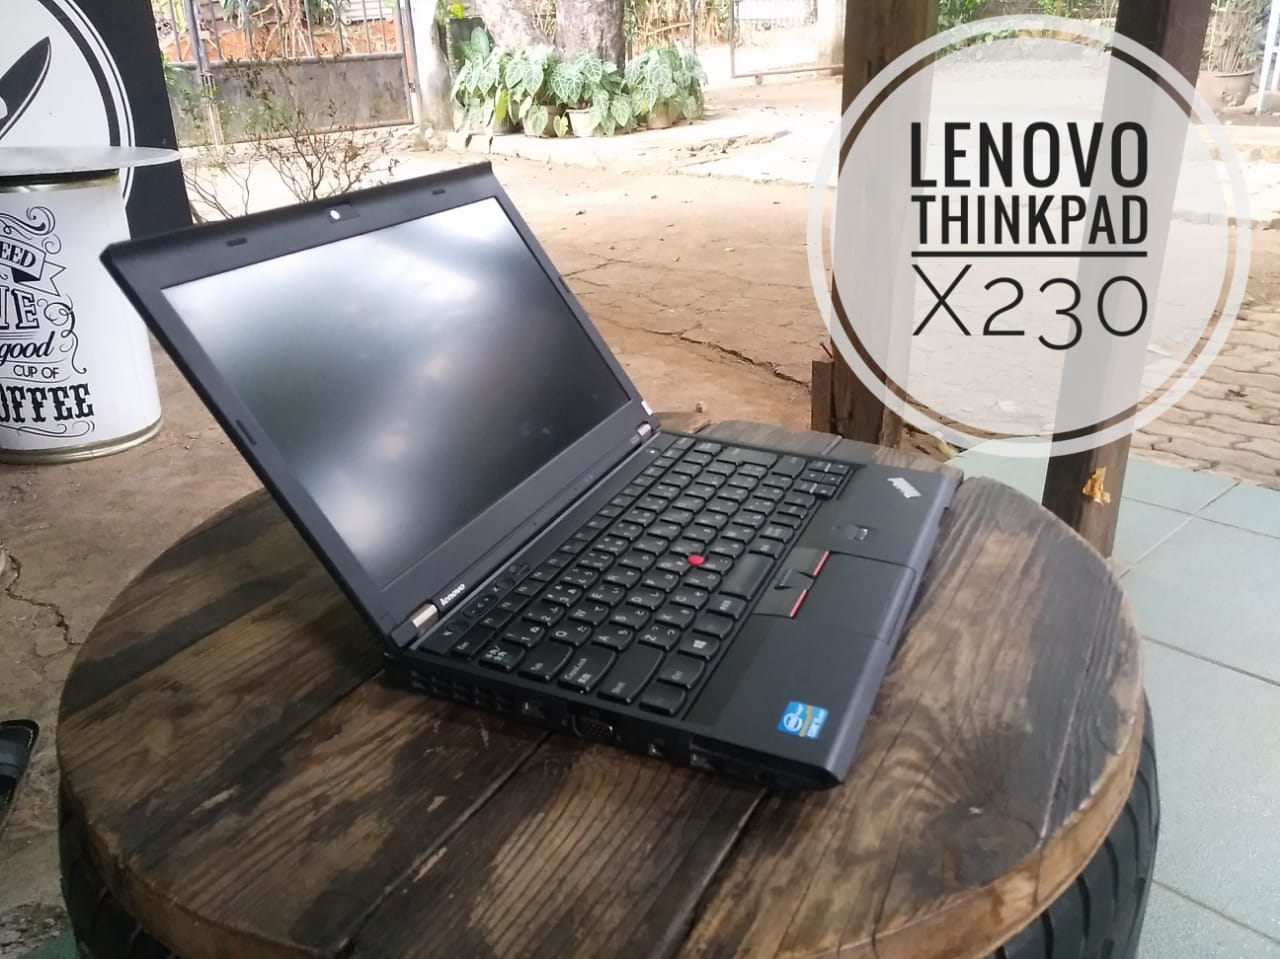 Lenovo Thinkpad X230 1